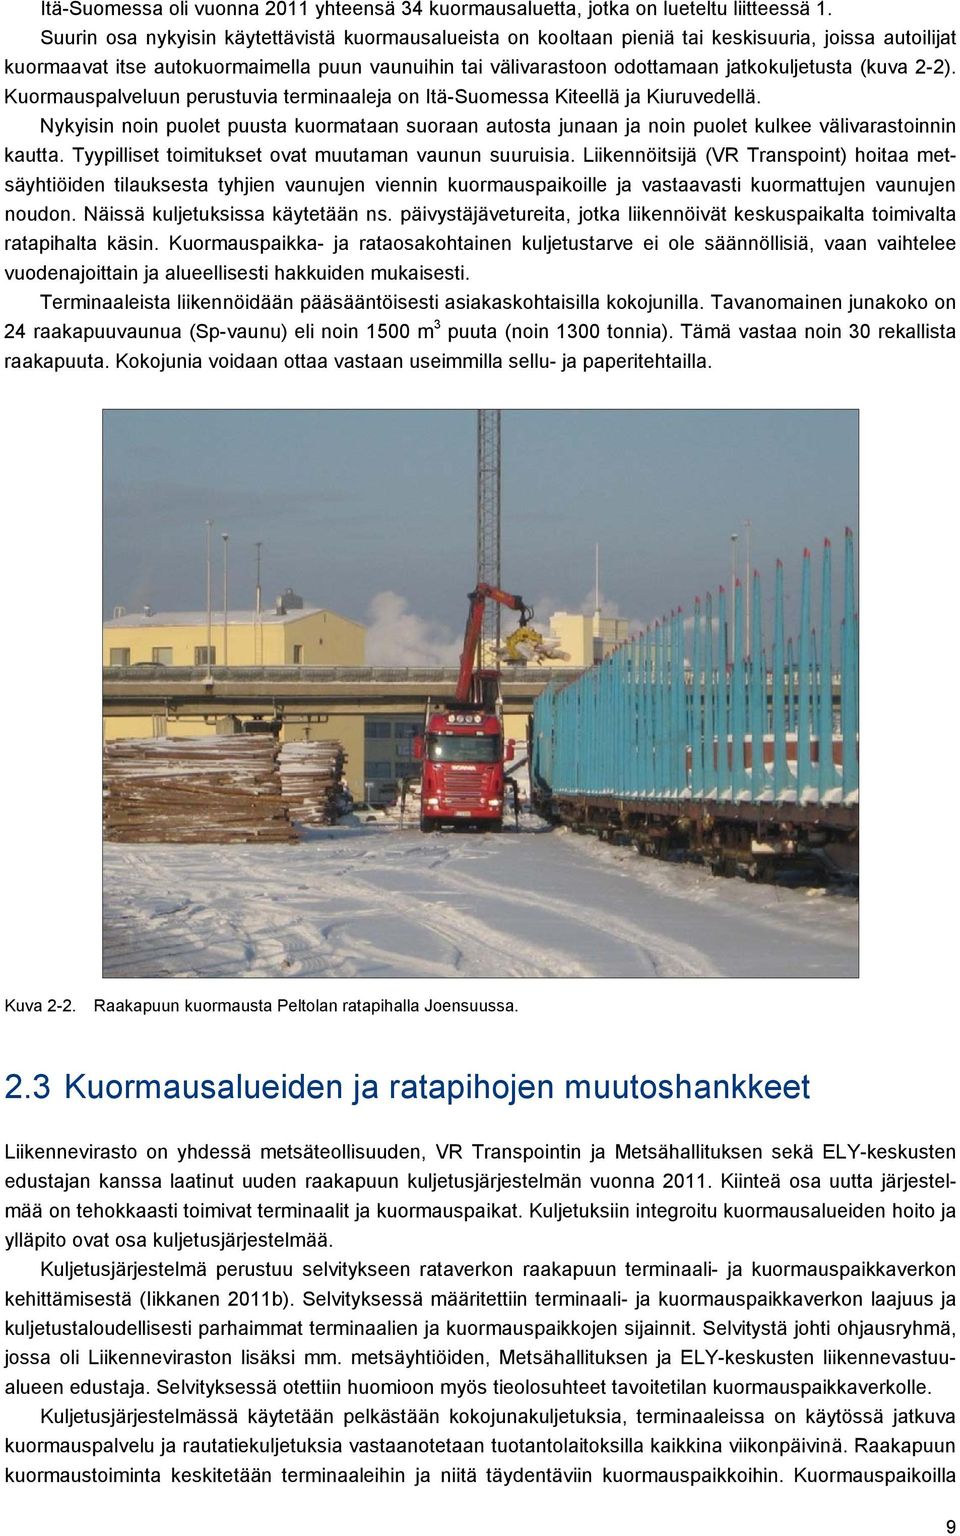 (kuva 2-2). Kuormauspalveluun perustuvia terminaaleja on Itä-Suomessa Kiteellä ja Kiuruvedellä.